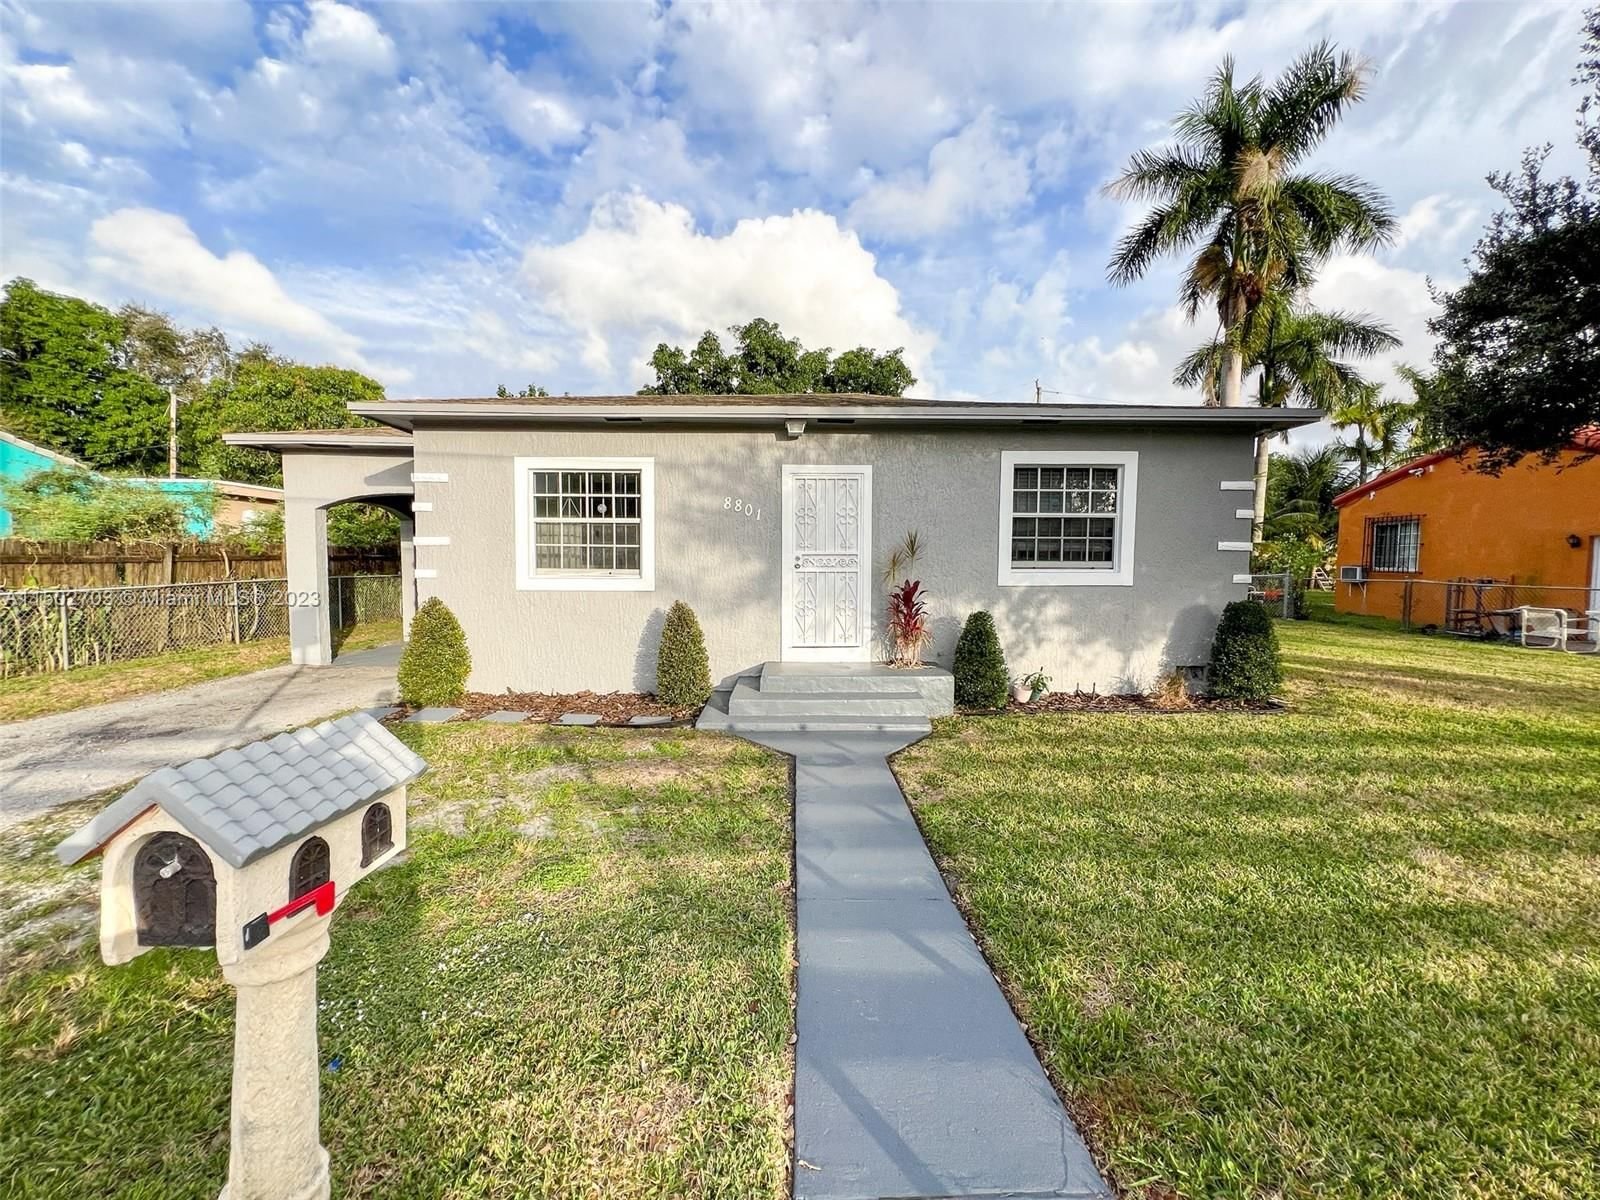 Real estate property located at 8801 17th Ave, Miami-Dade County, FLAMINGO VILLAGE, Miami, FL